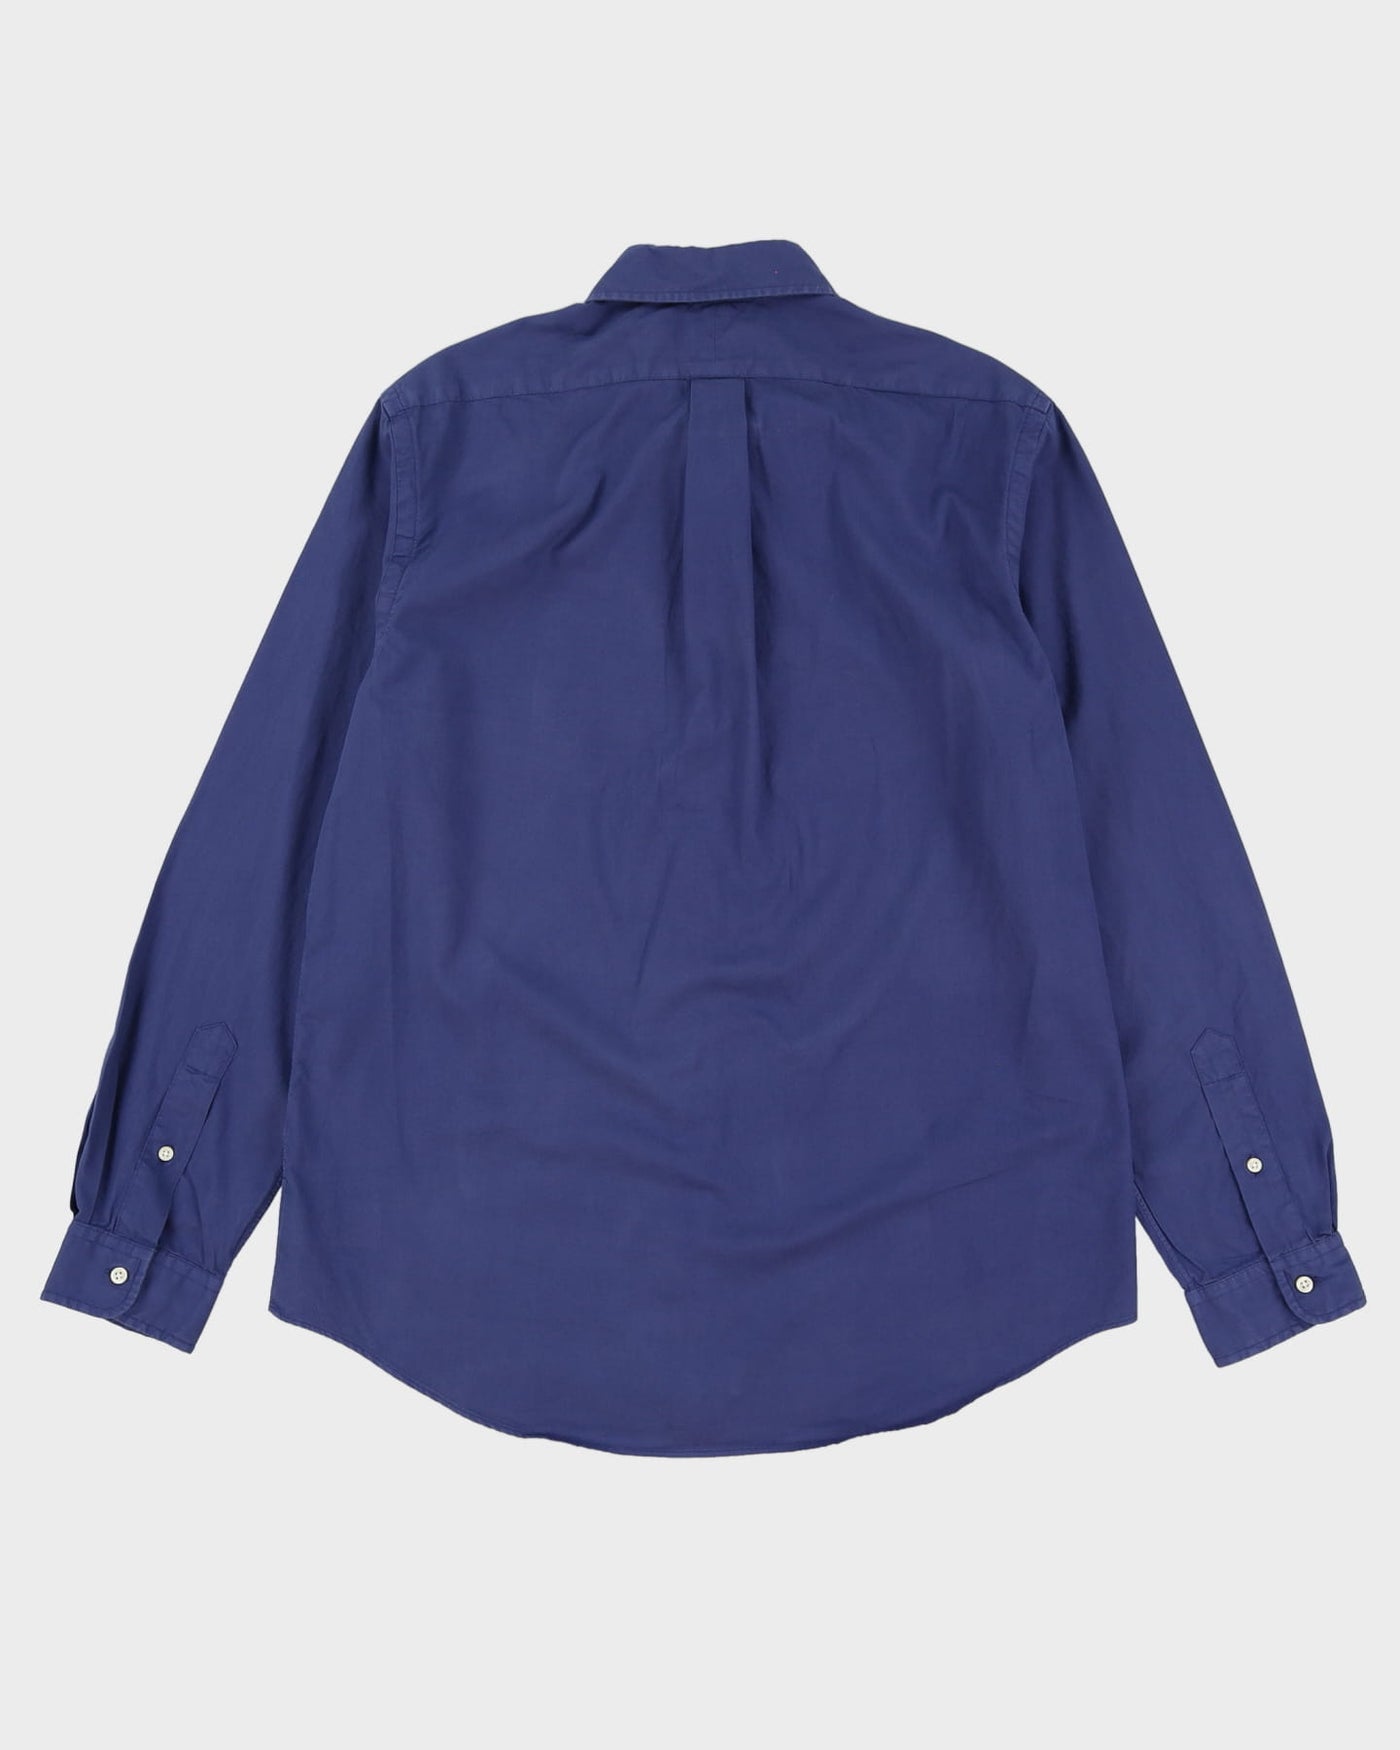 Ralph Lauren Blue Button Up Shirt - L